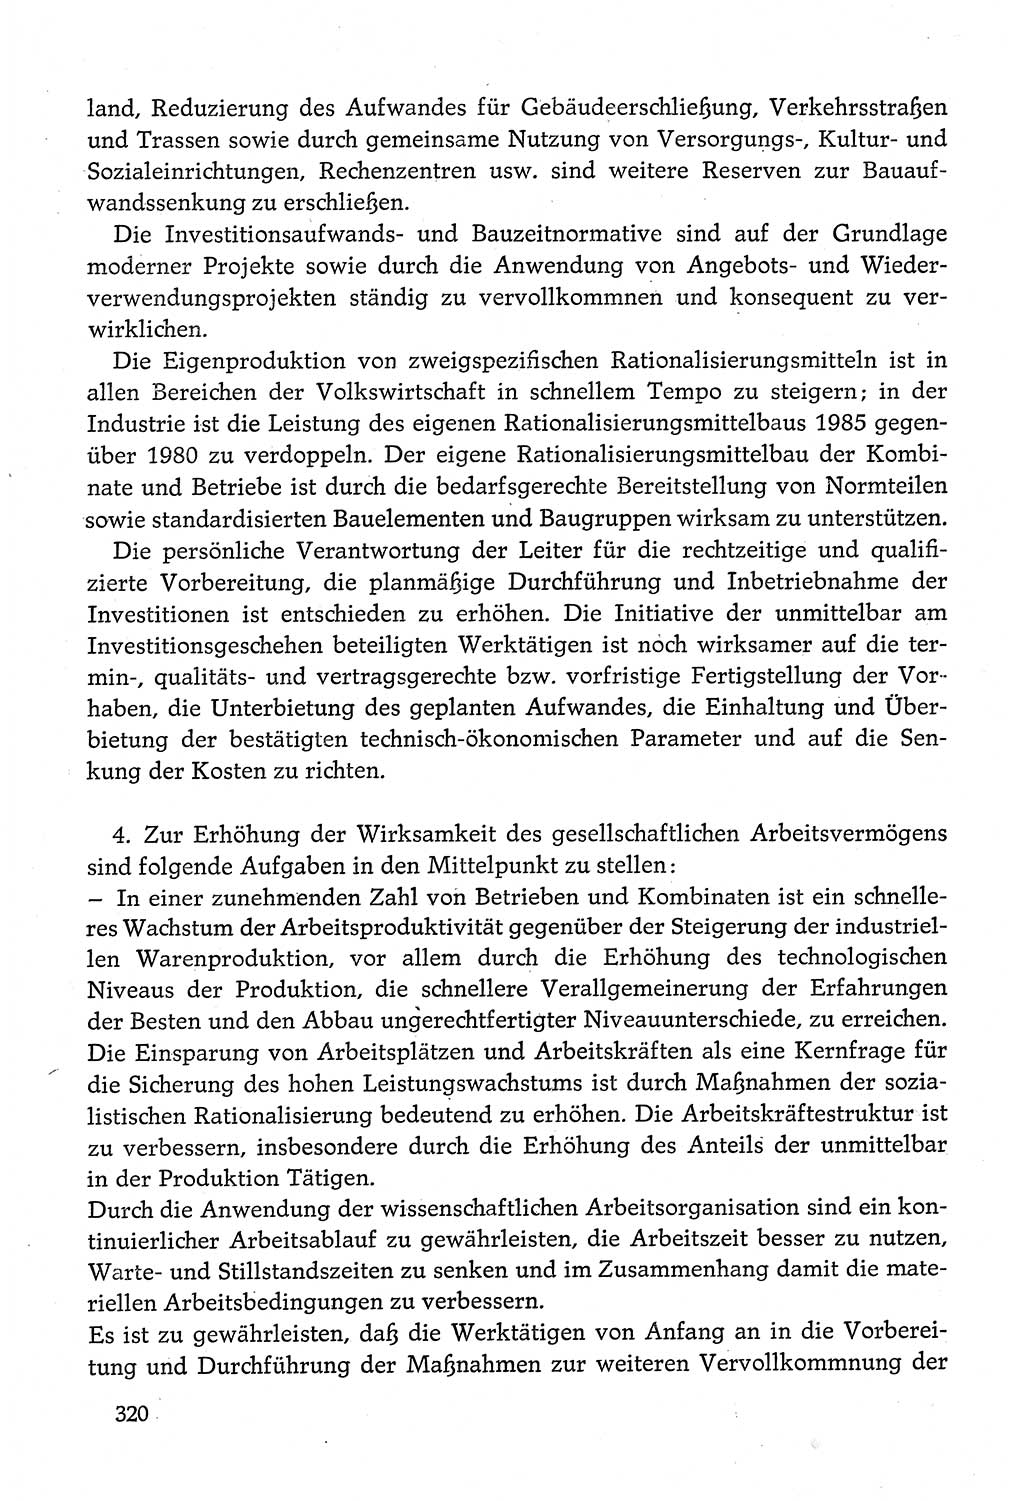 Dokumente der Sozialistischen Einheitspartei Deutschlands (SED) [Deutsche Demokratische Republik (DDR)] 1980-1981, Seite 320 (Dok. SED DDR 1980-1981, S. 320)